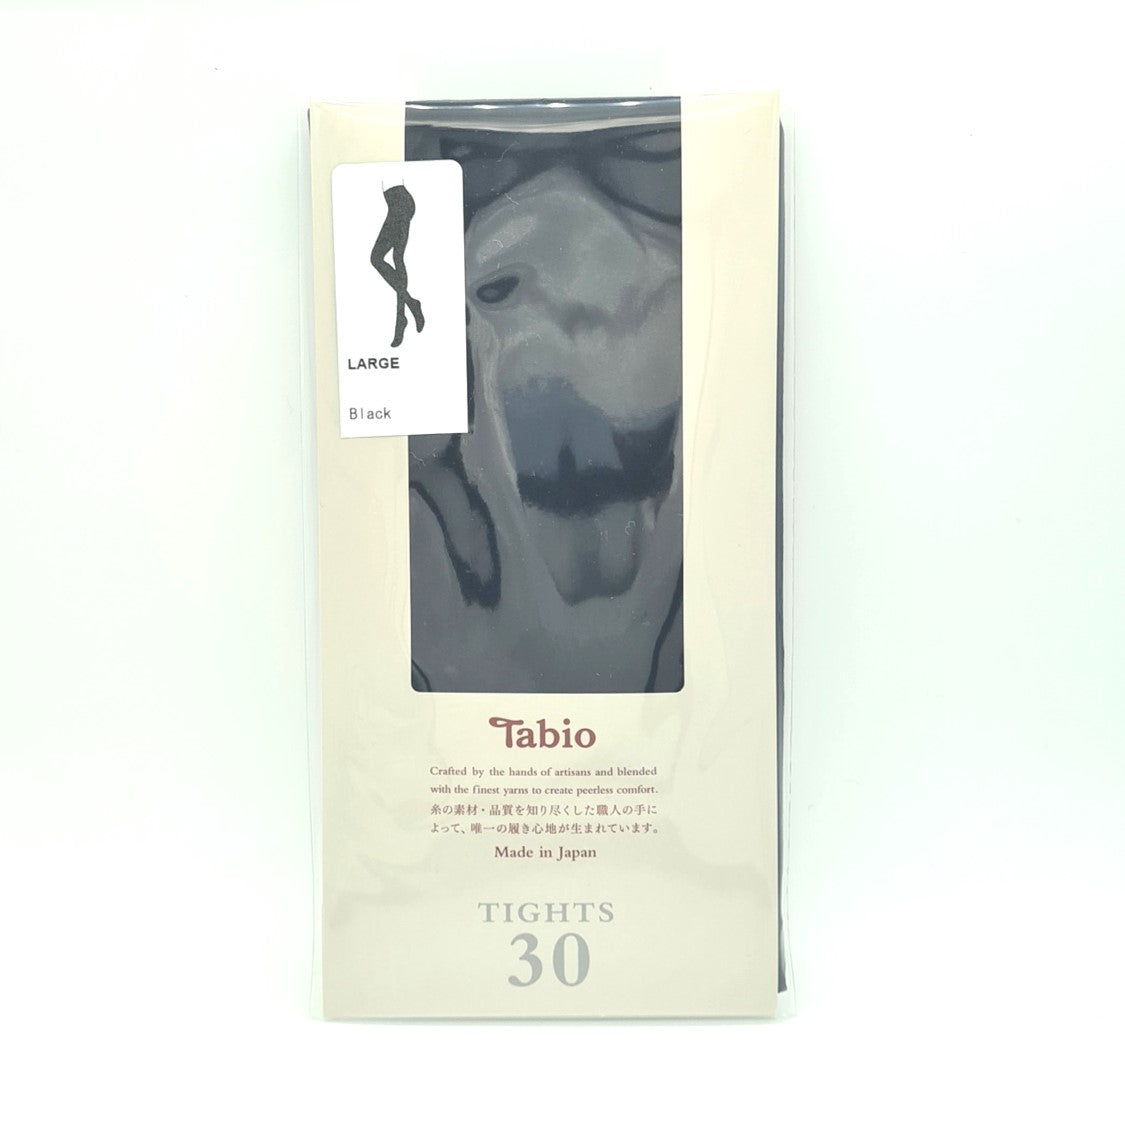 Tabio - The Refinement